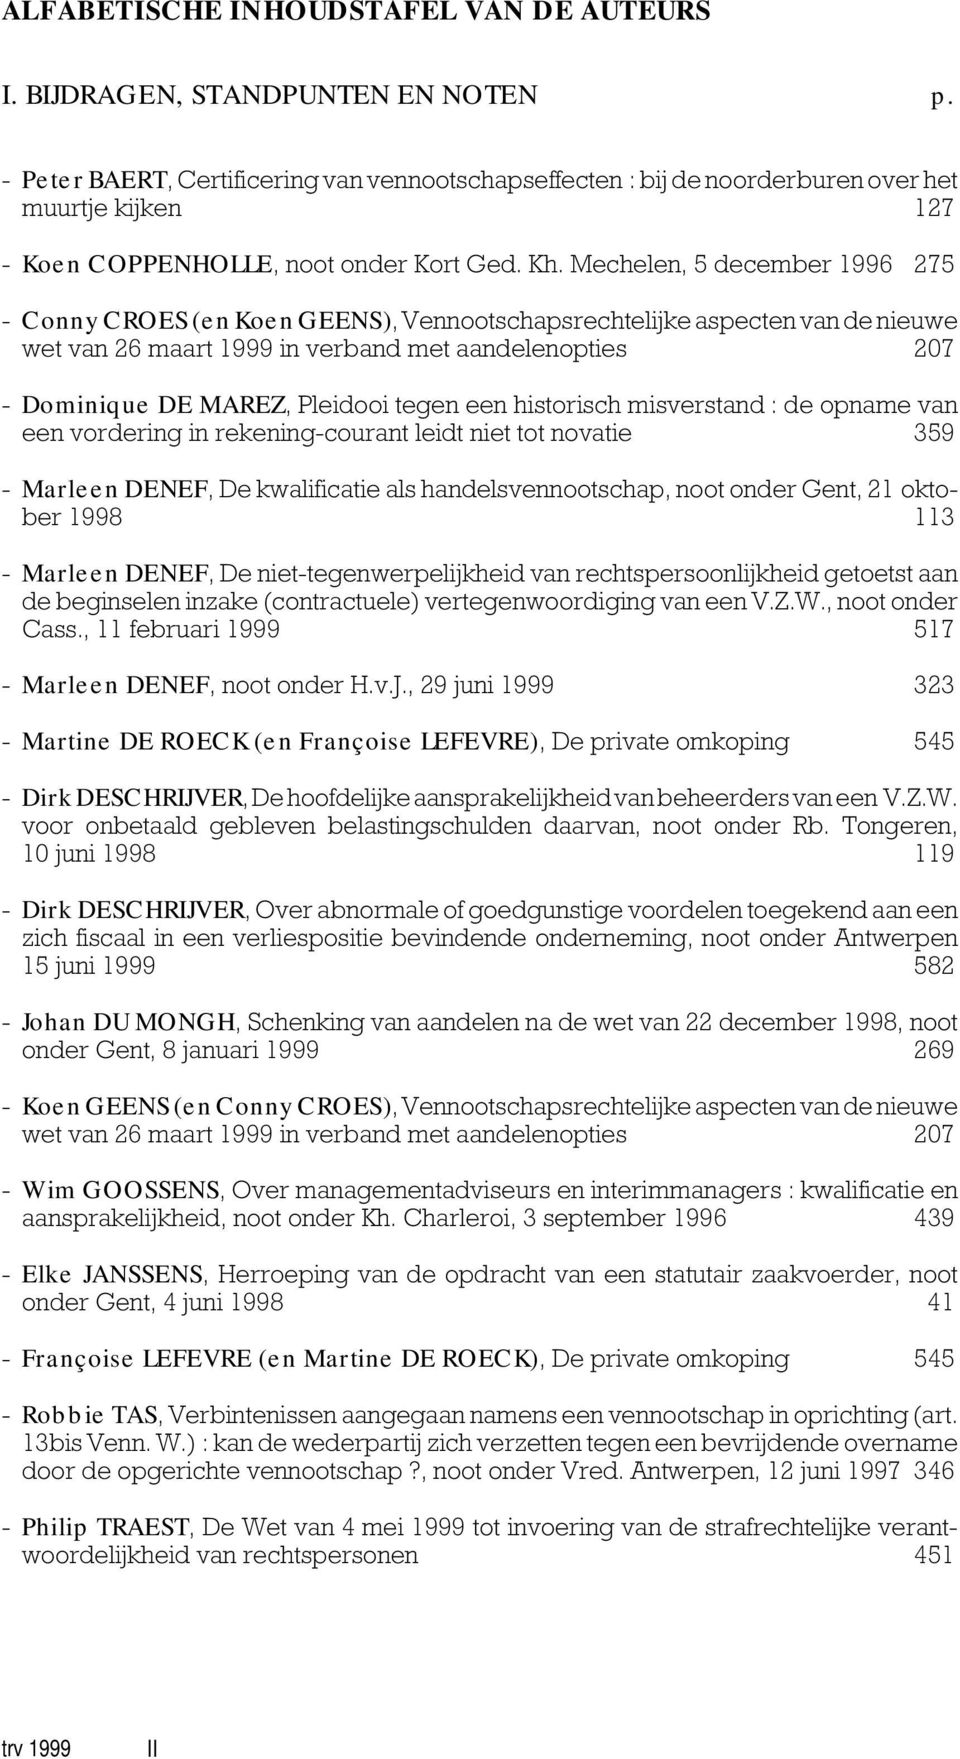 Mechelen, 5 december 1996 275 - Conny CROES (en Koen GEENS), Vennootschapsrechtelijke aspecten van de nieuwe wet van 26 maart 1999 in verband met aandelenopties 207 - Dominique DE MAREZ, Pleidooi